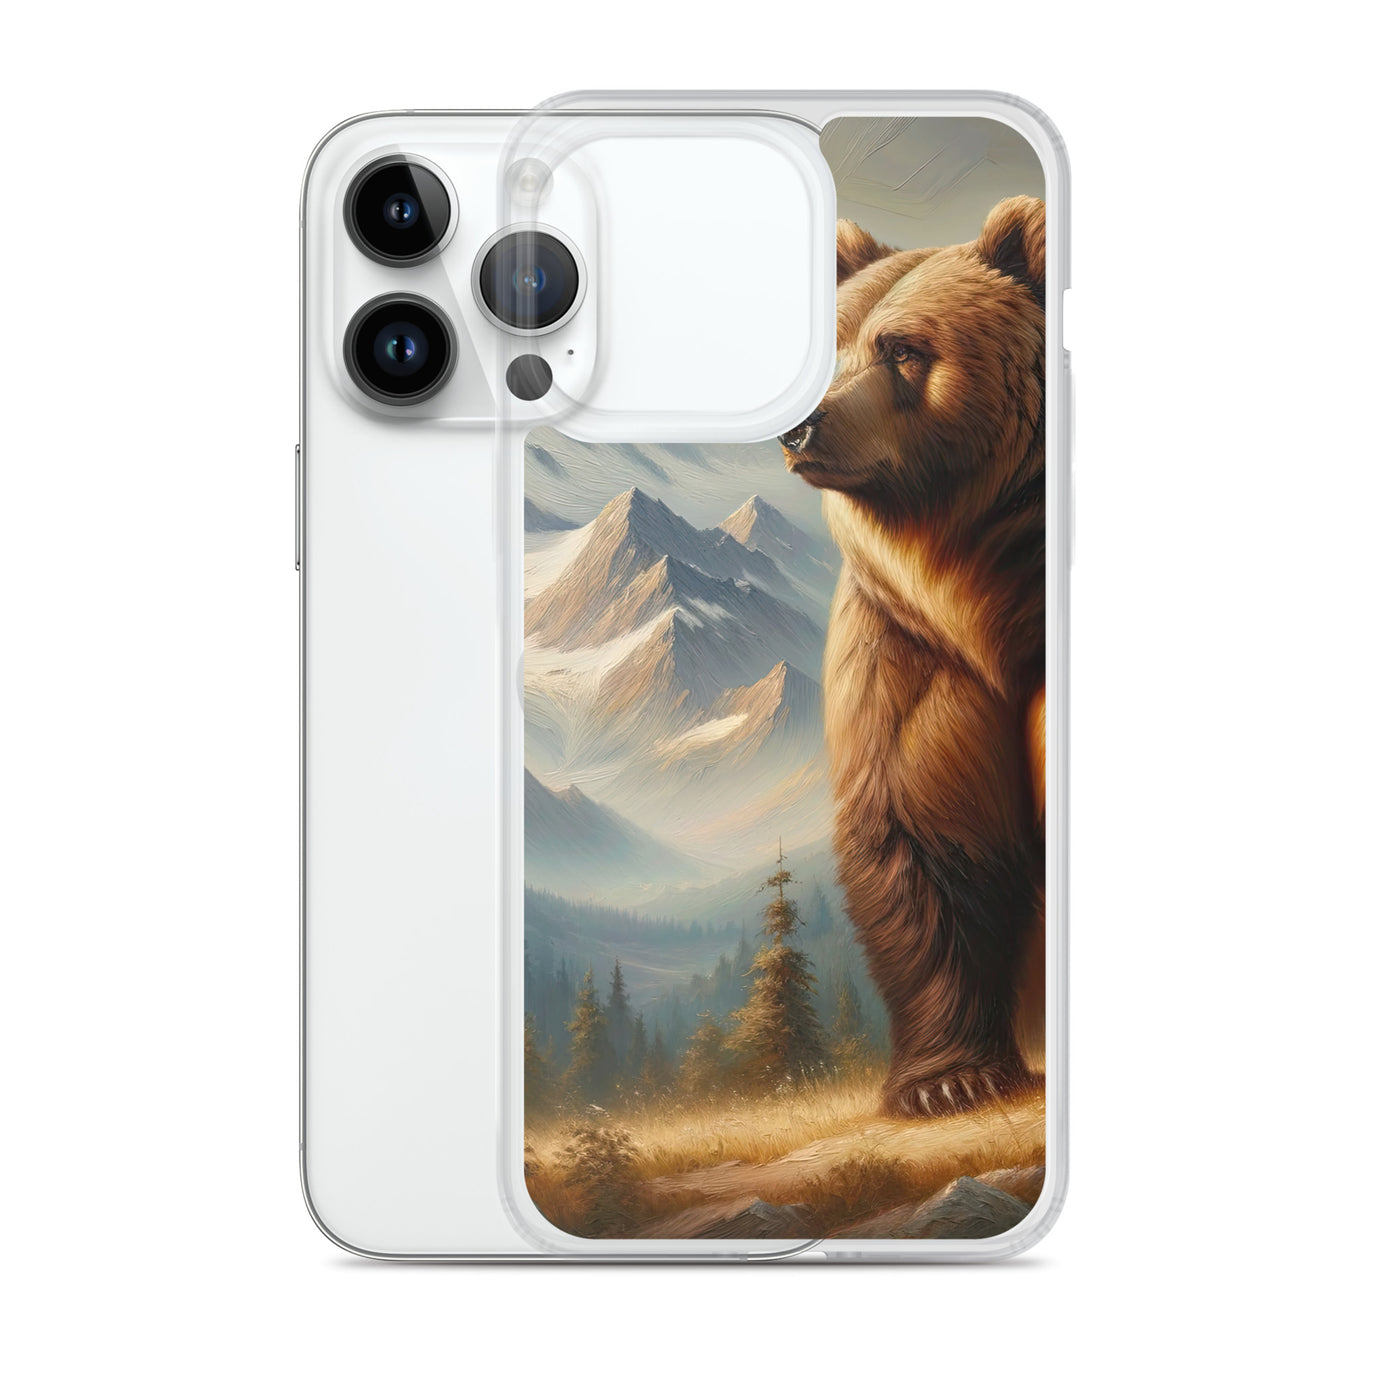 Ölgemälde eines königlichen Bären vor der majestätischen Alpenkulisse - iPhone Schutzhülle (durchsichtig) camping xxx yyy zzz